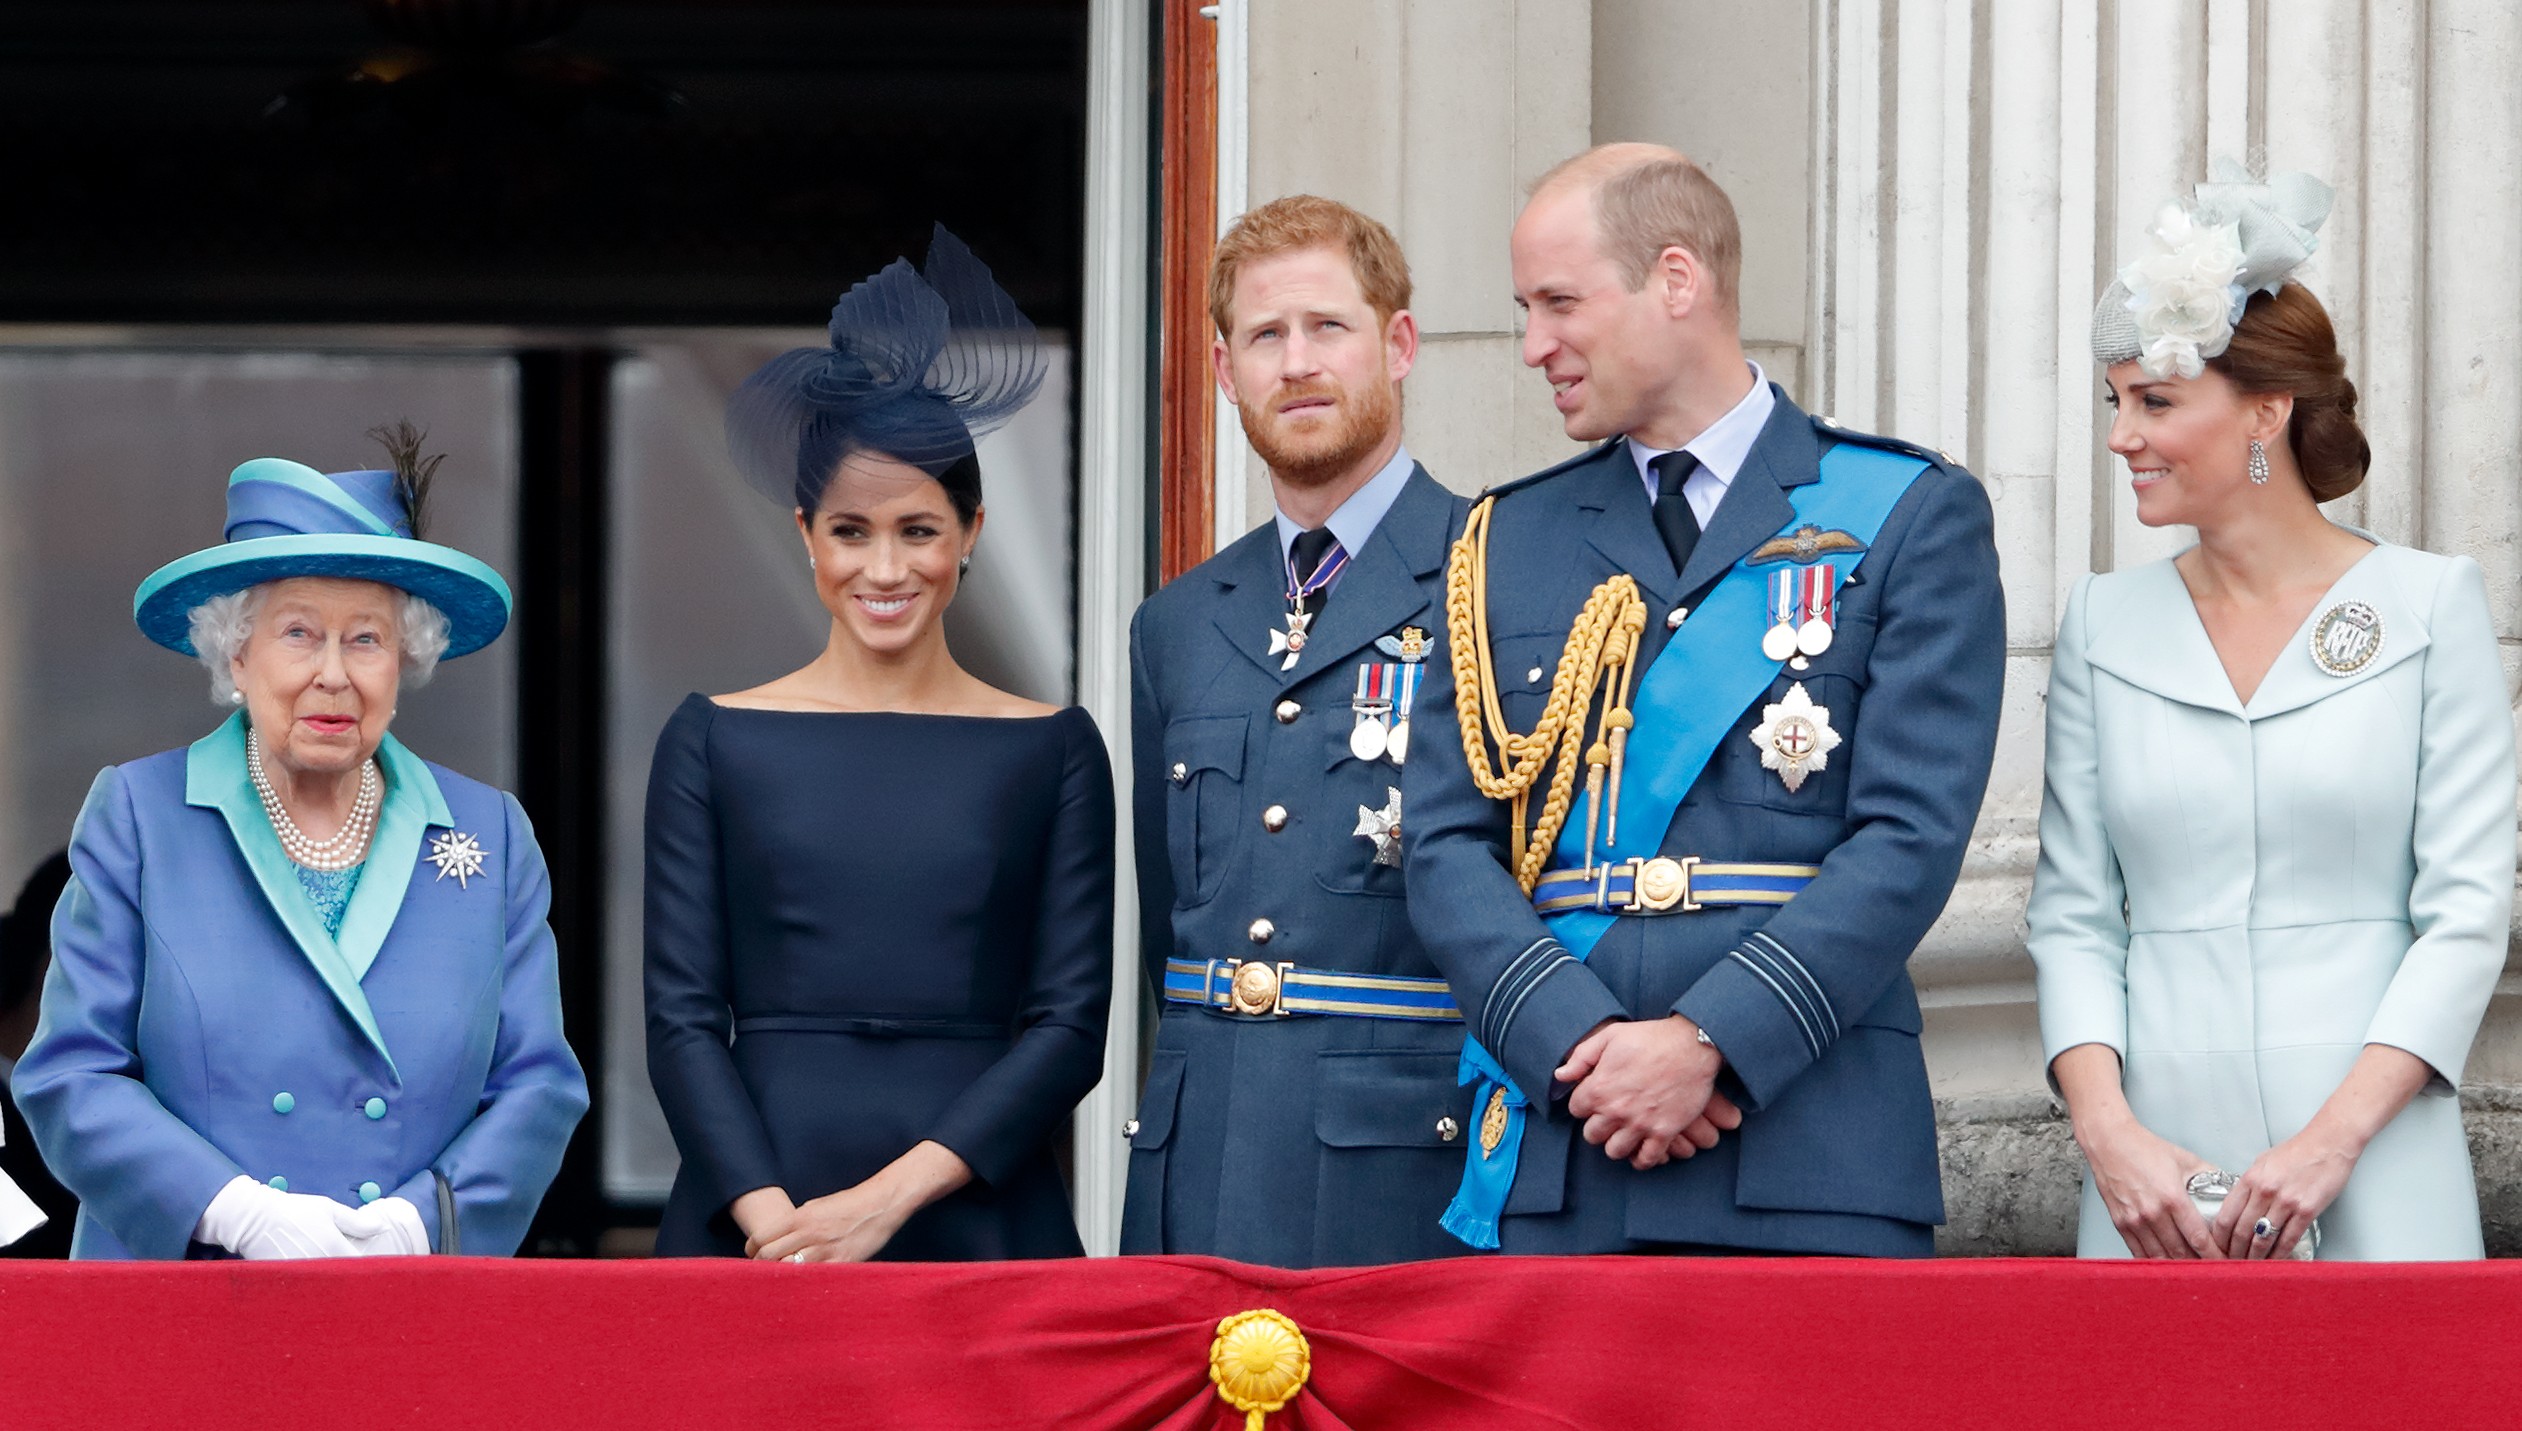 A rainha Elizabeth 2ª na companhia de Meghan Markle, Príncipe Harry, Príncipe William e Kate Middleton em evento real em julho de 2018 (Foto: Getty Images)